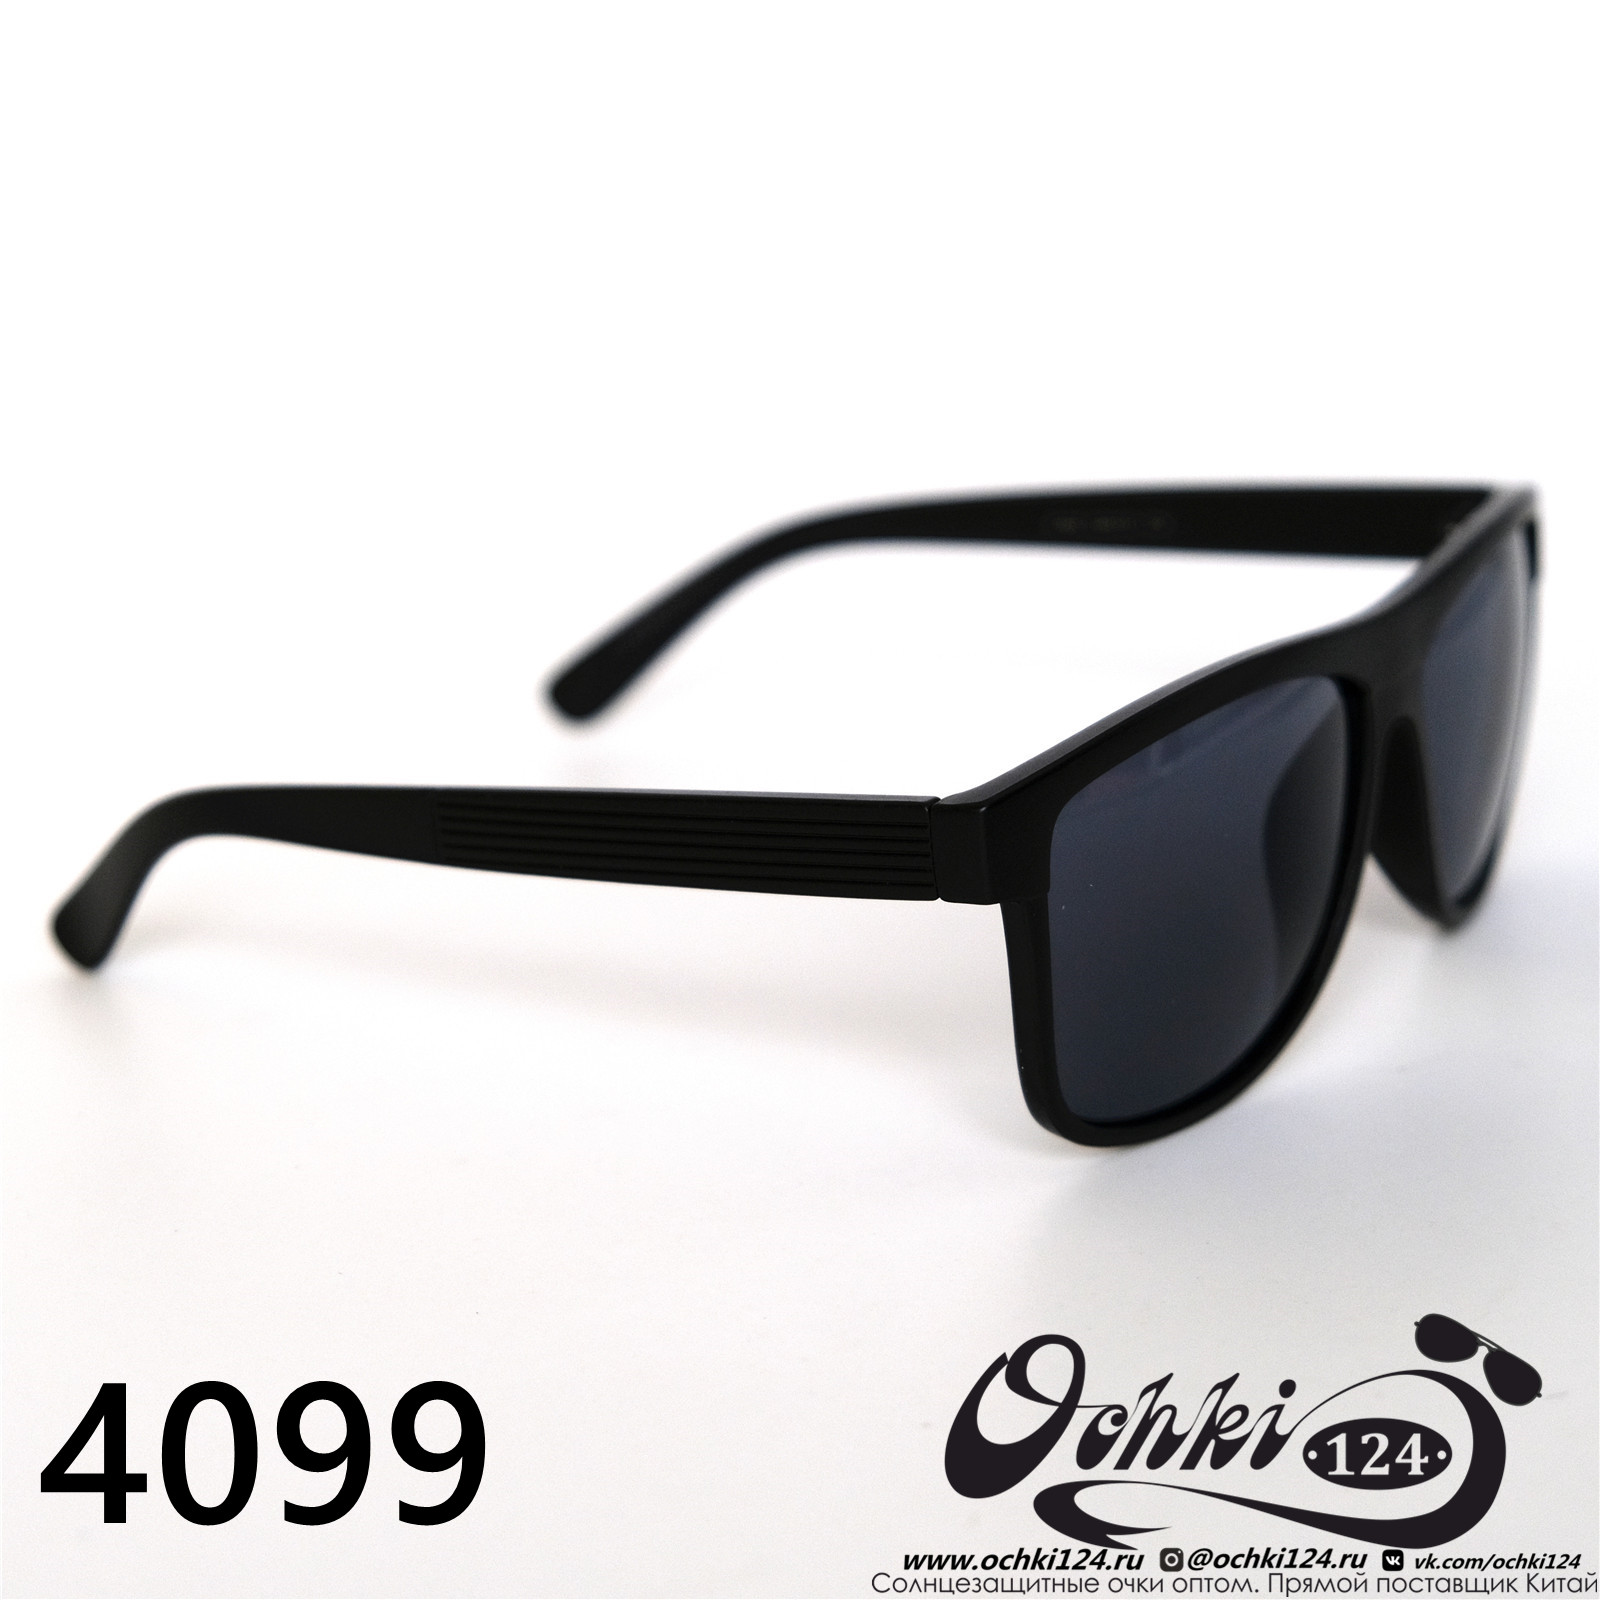  Солнцезащитные очки картинка 2022 Мужские Стандартные Materice 4099-4 